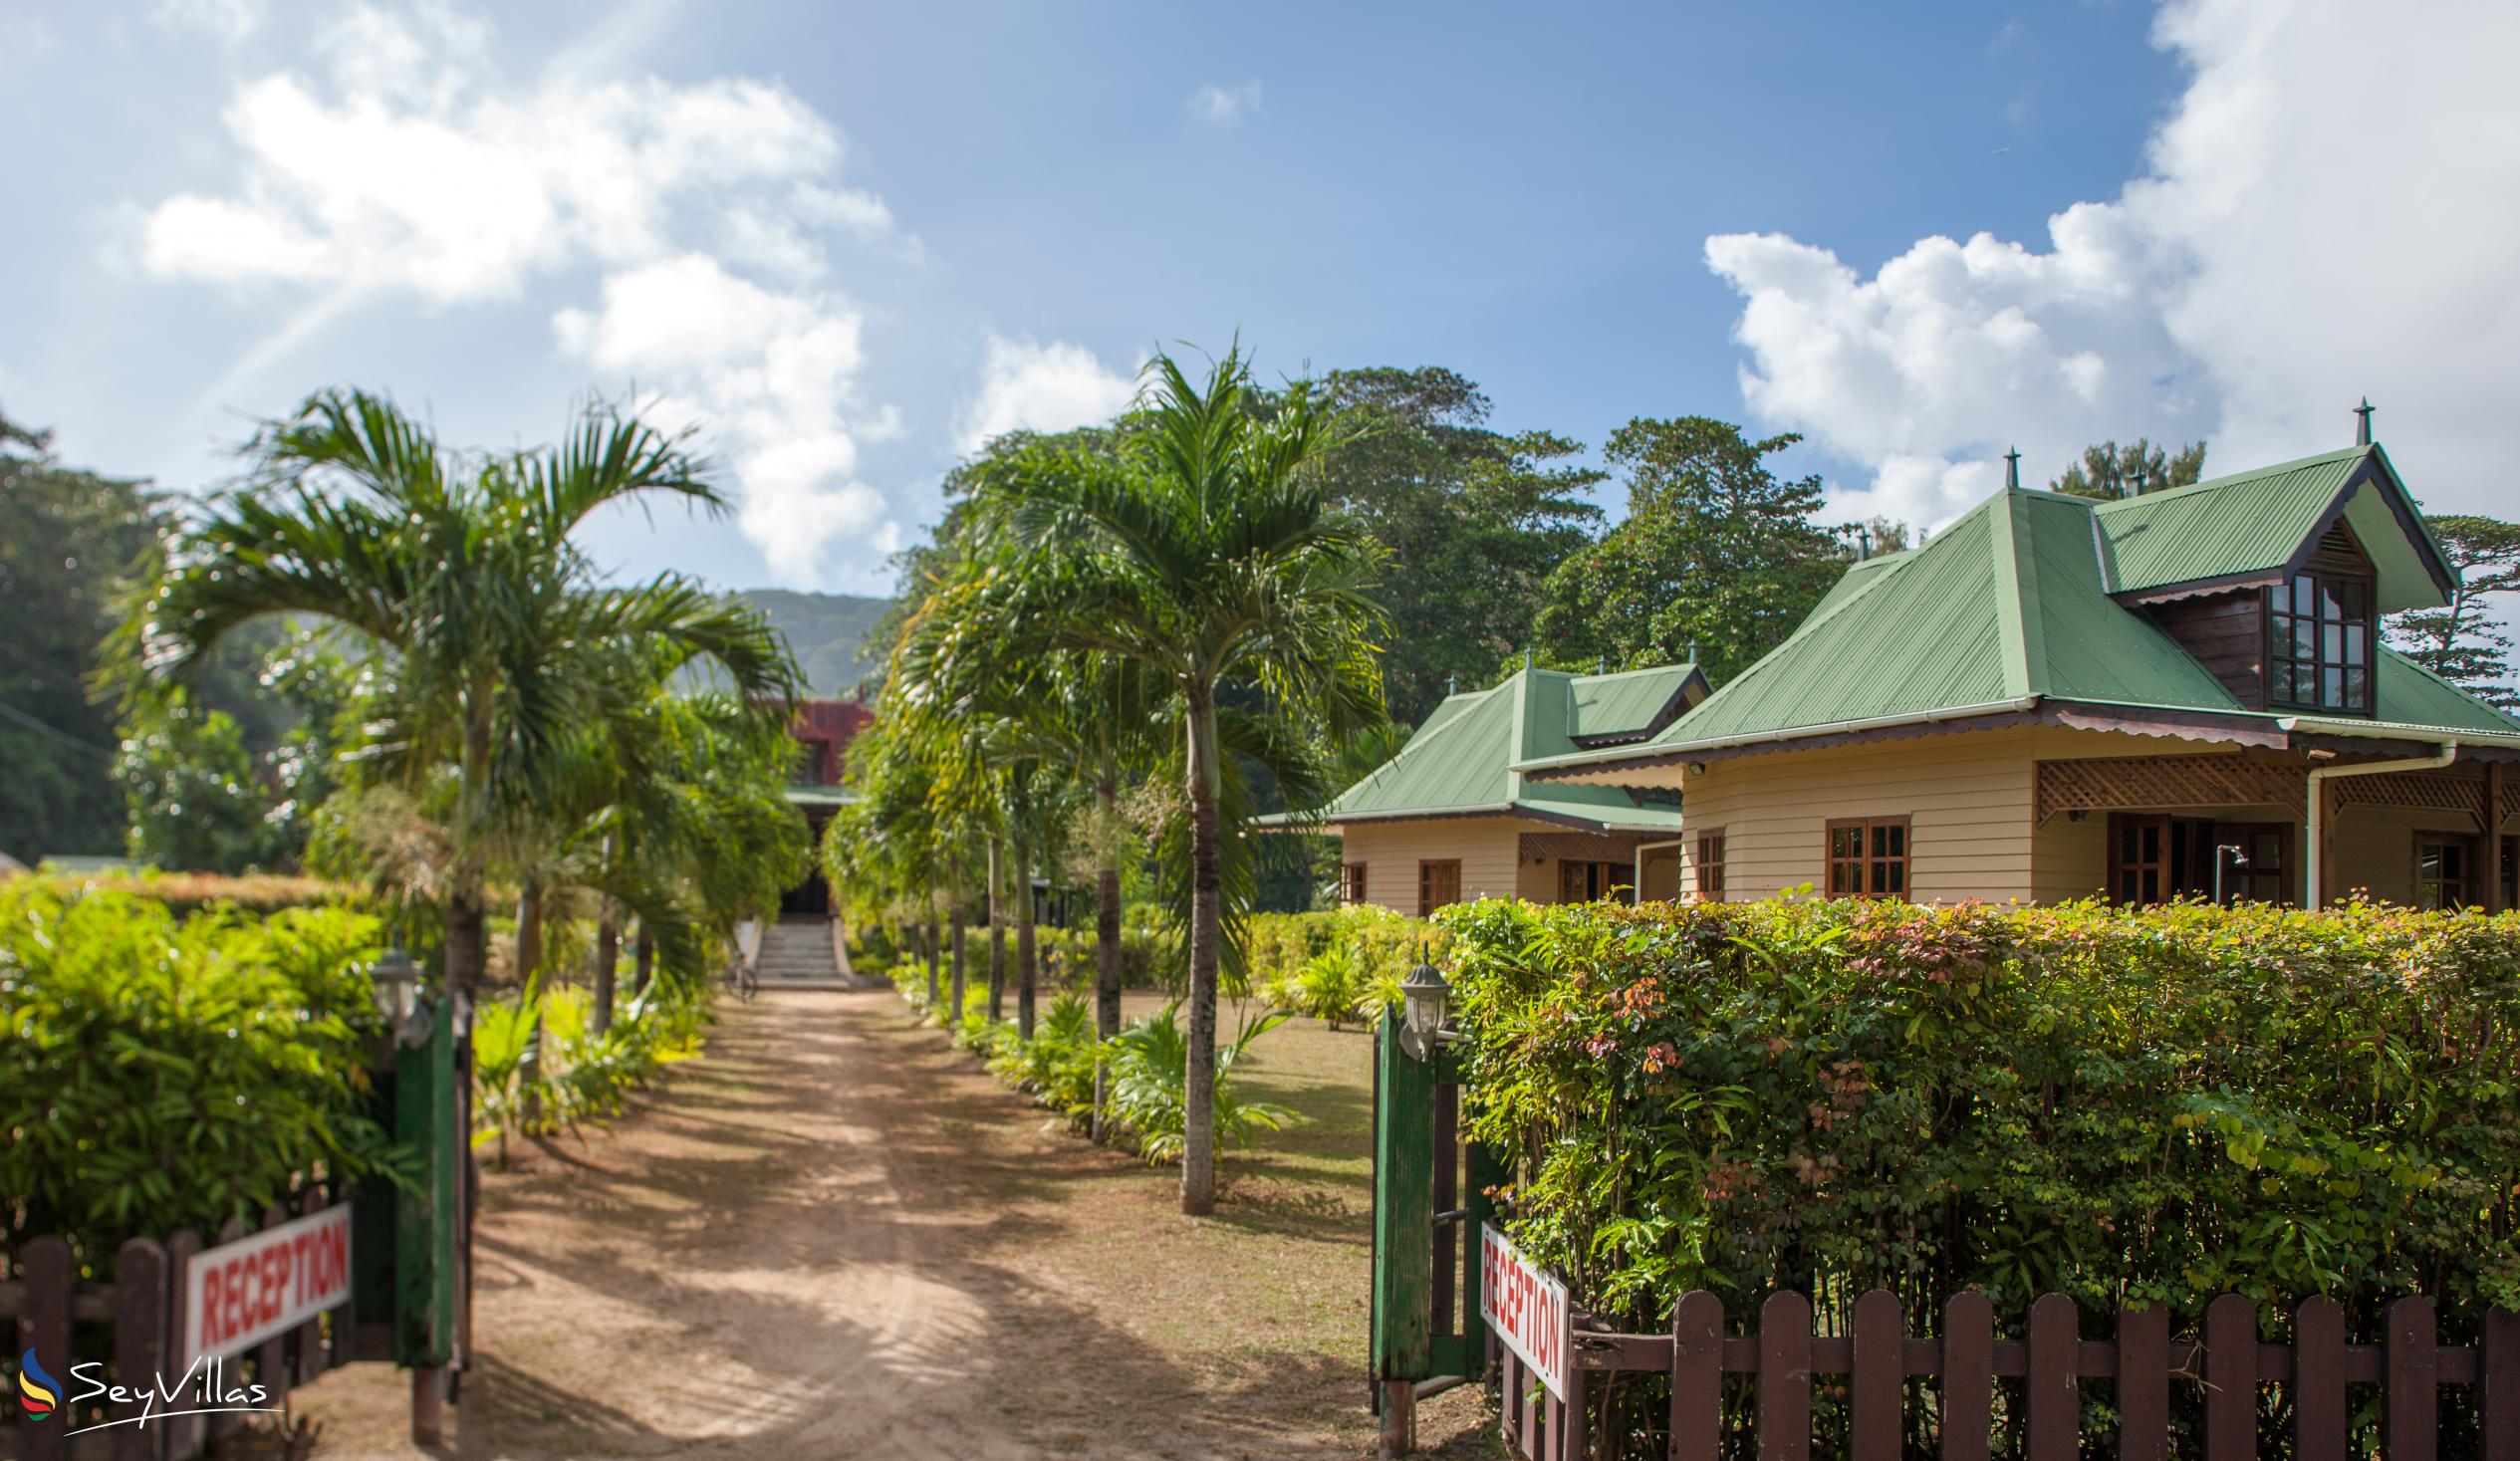 Photo 2: Villa Creole - Outdoor area - La Digue (Seychelles)